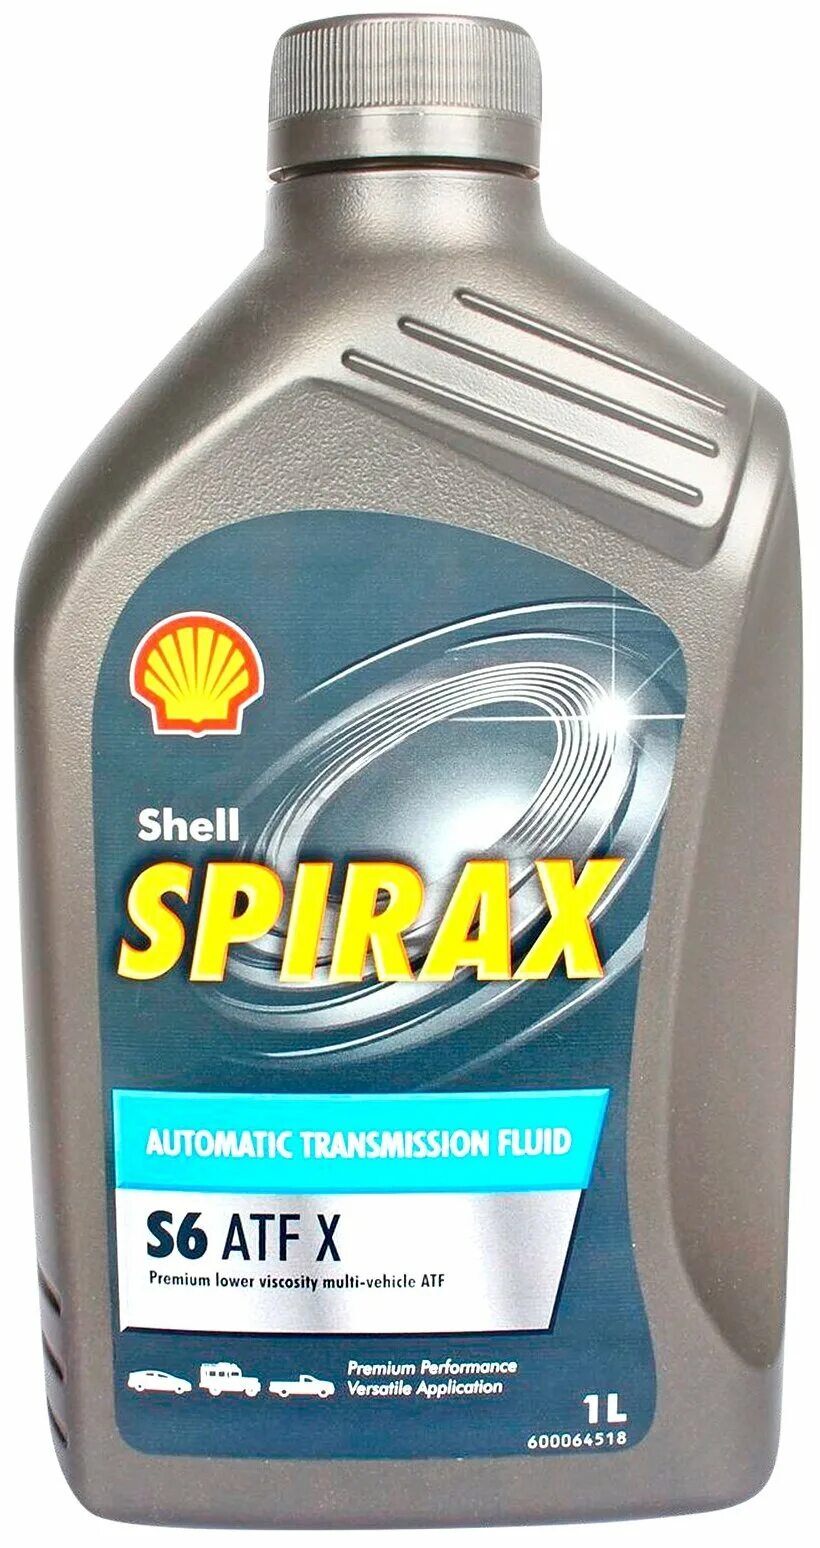 Shell spirax atf x. Shell Spirax s6 ATF. Spirax s6 ATF X. Shell Spirax s6 ATF X. Трансмиссионное масло Shell Spirax s6 ATF X.